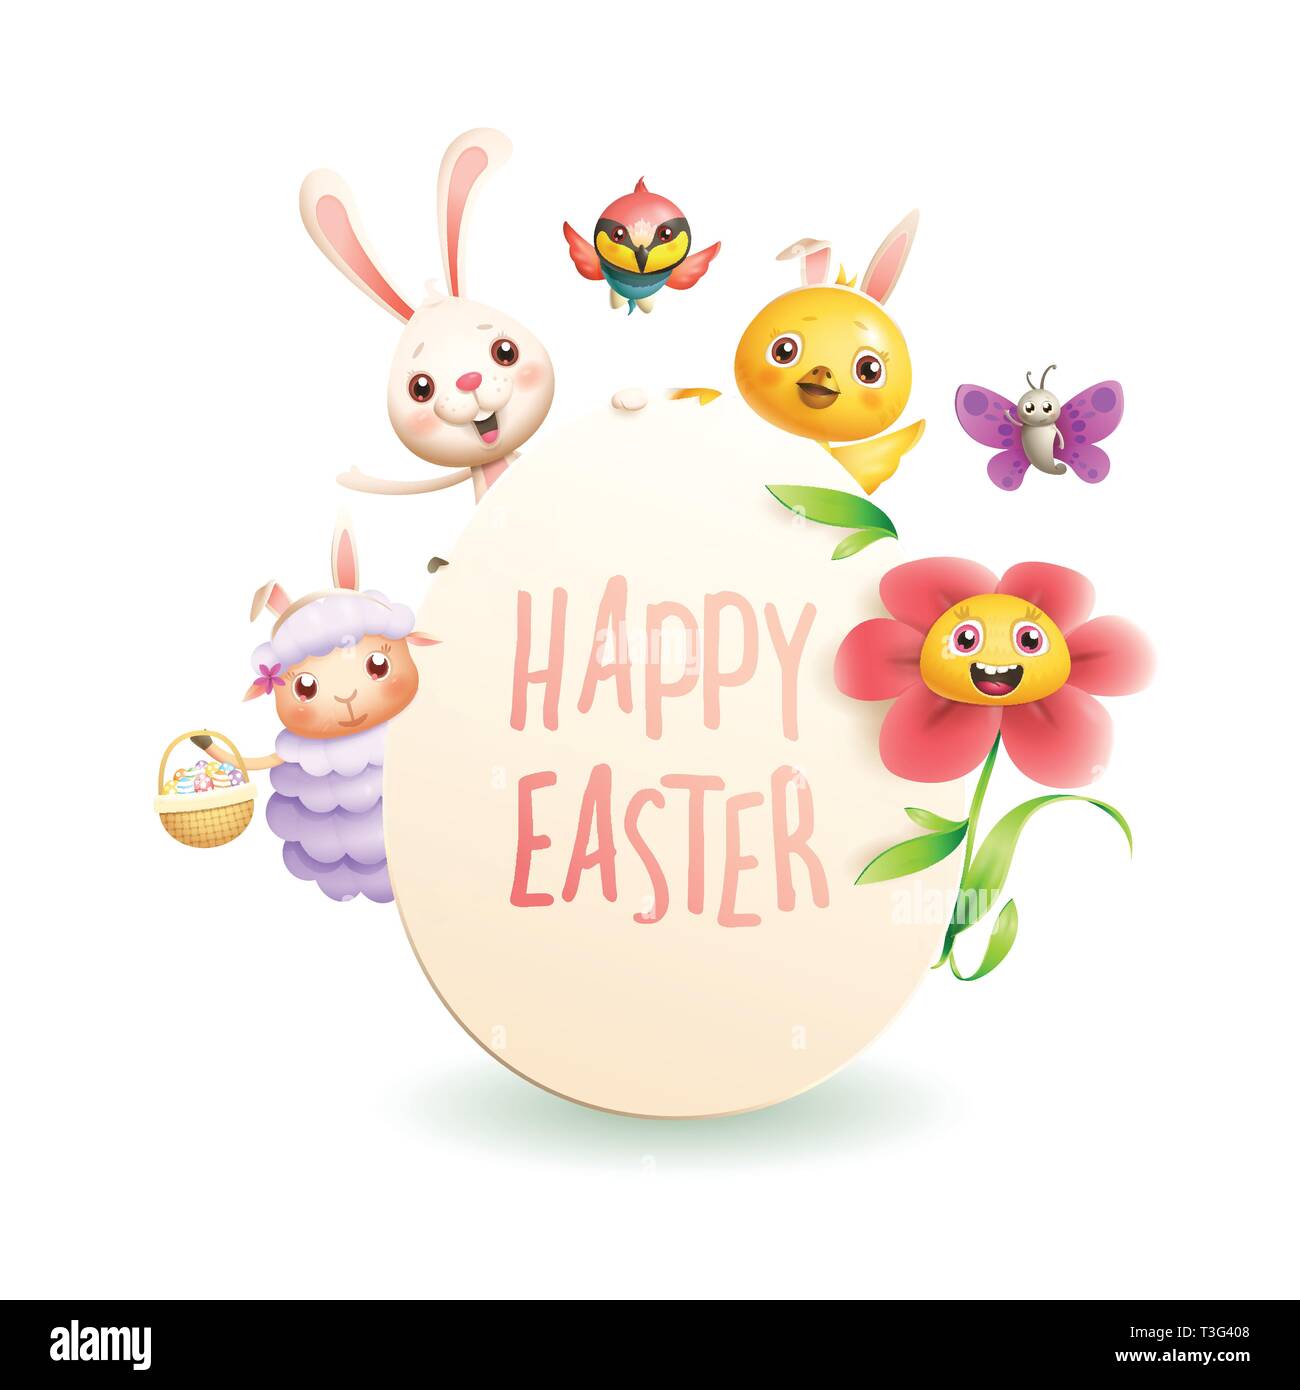 Carte de vœux de Pâques - caractères des animaux sur la forme des oeufs célébrer Pâques isolé sur fond blanc Illustration de Vecteur